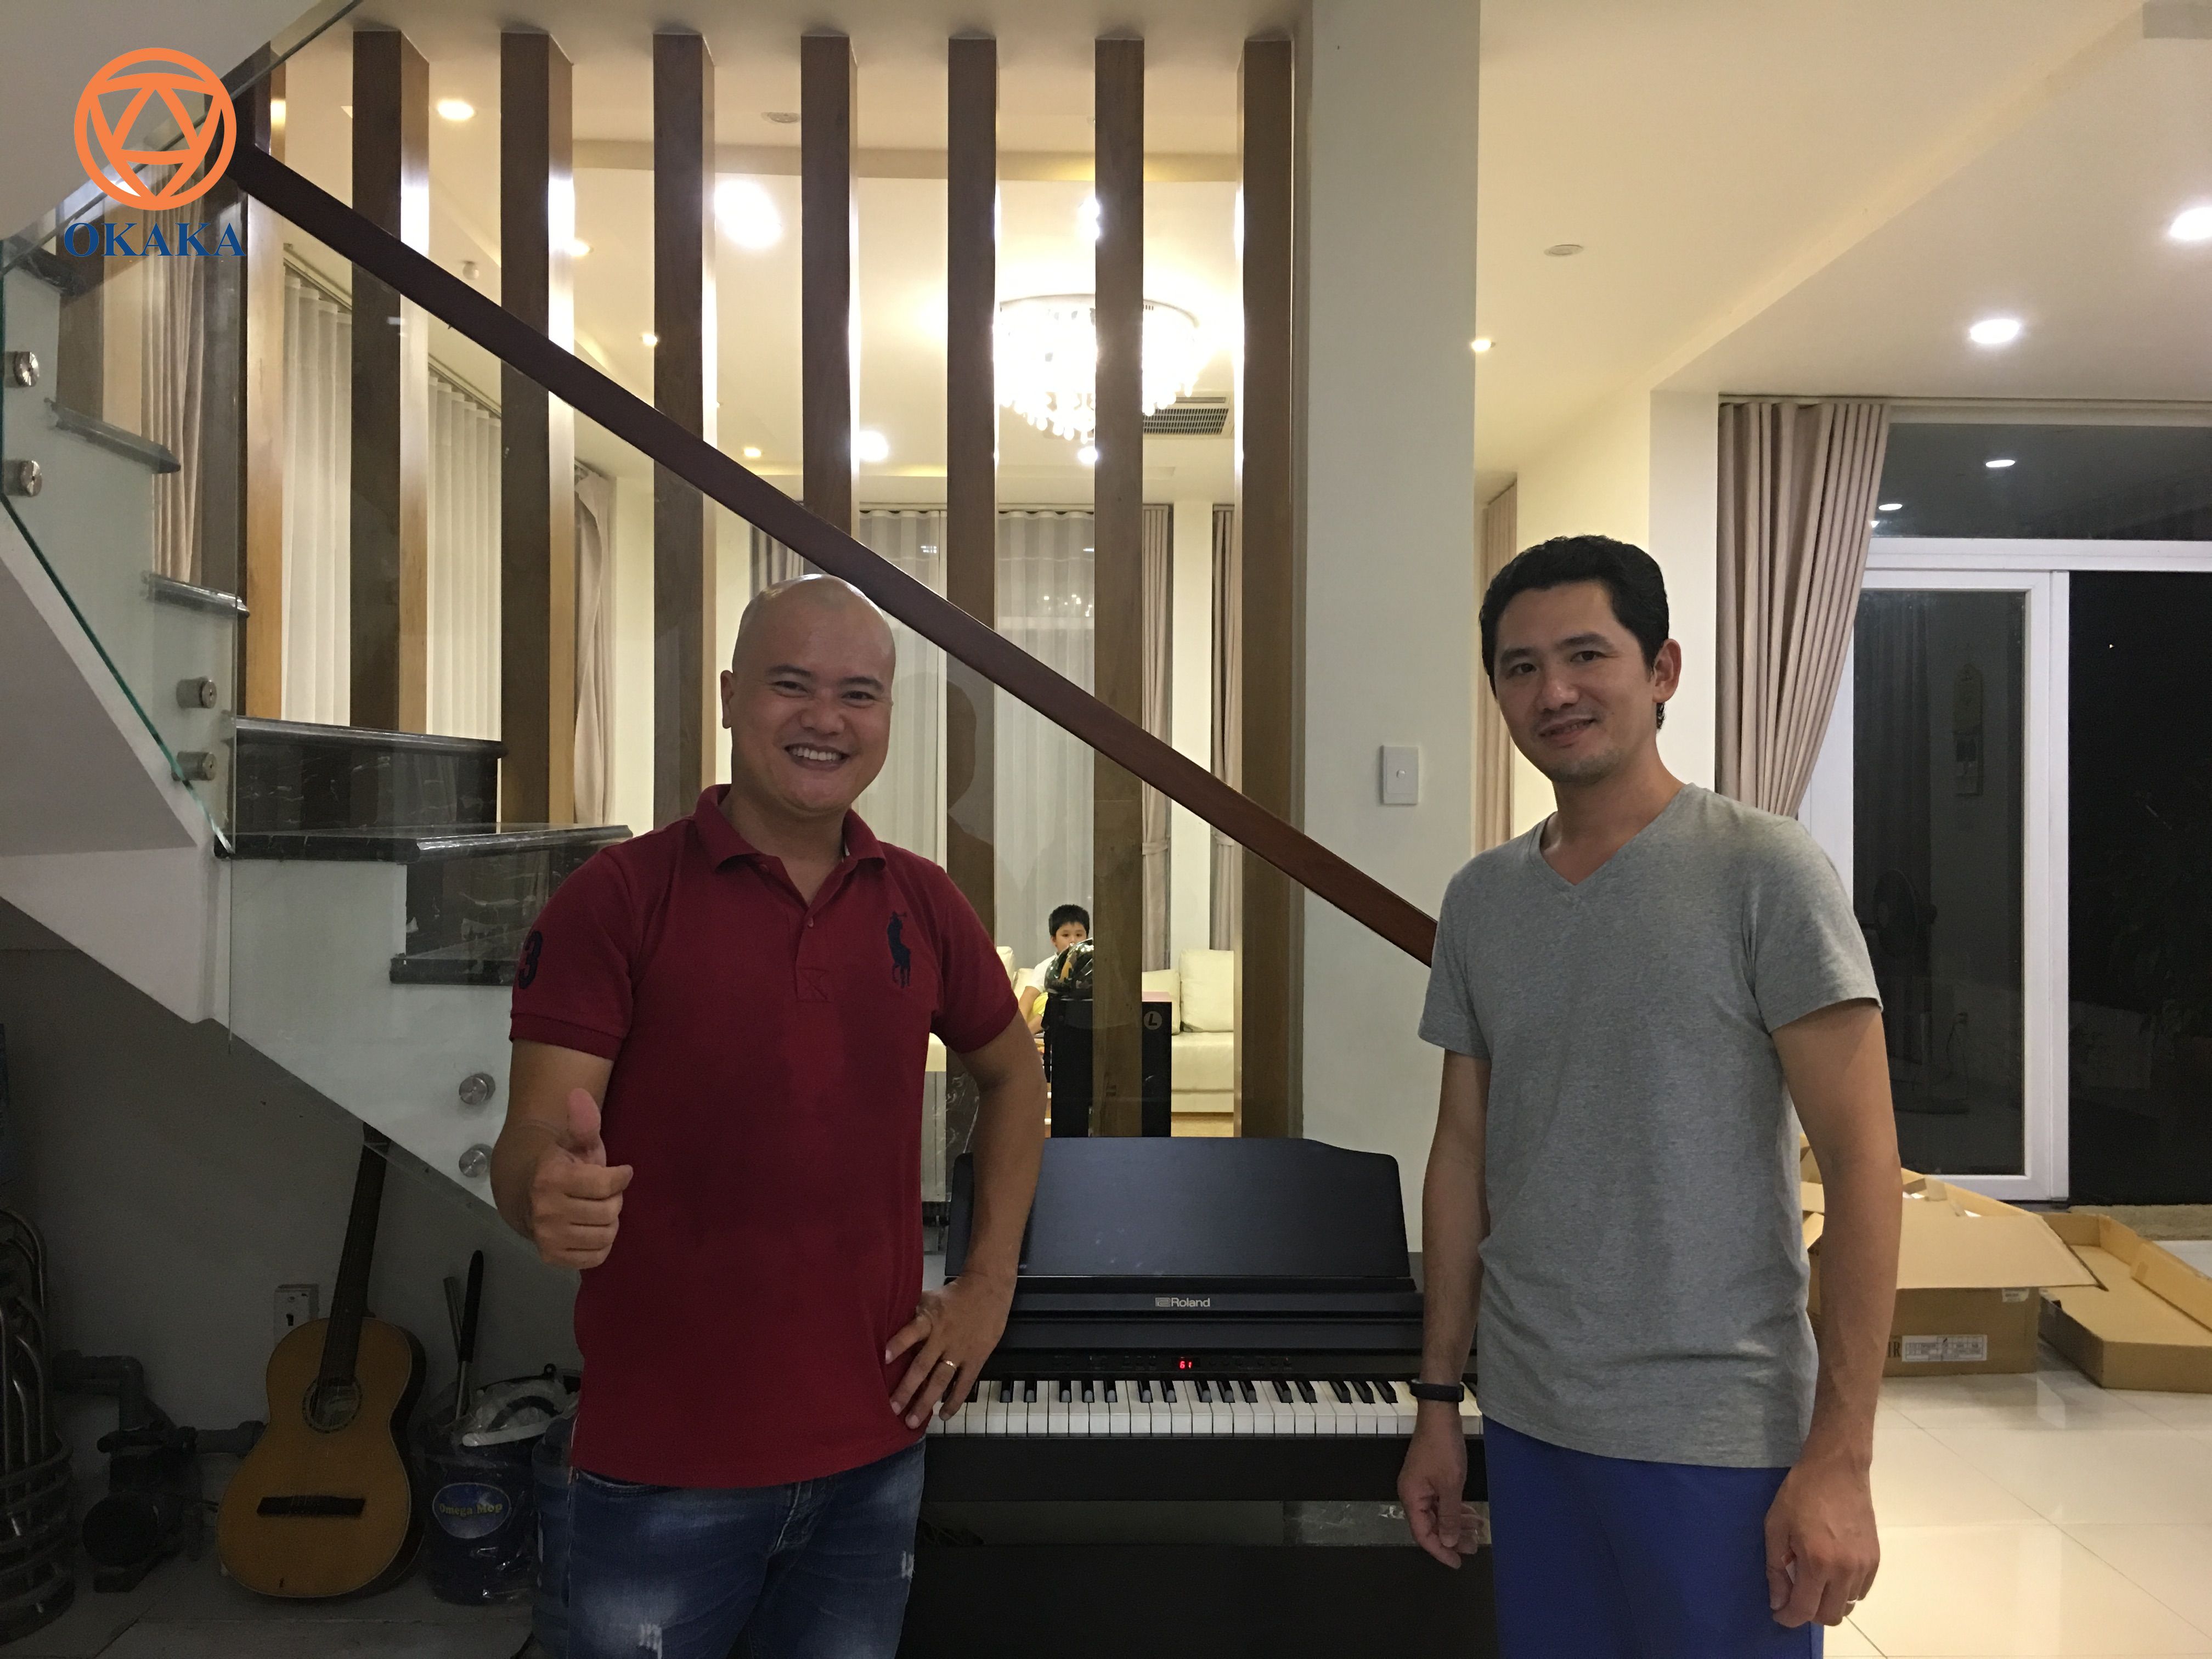 Chiều tối hôm qua, OKAKA đã giao đàn piano điện Roland RP-501R cho anh Bình ở khu dự án Jamona Home Resort thuộc phường Hiệp Bình Phước, quận Thủ Đức.